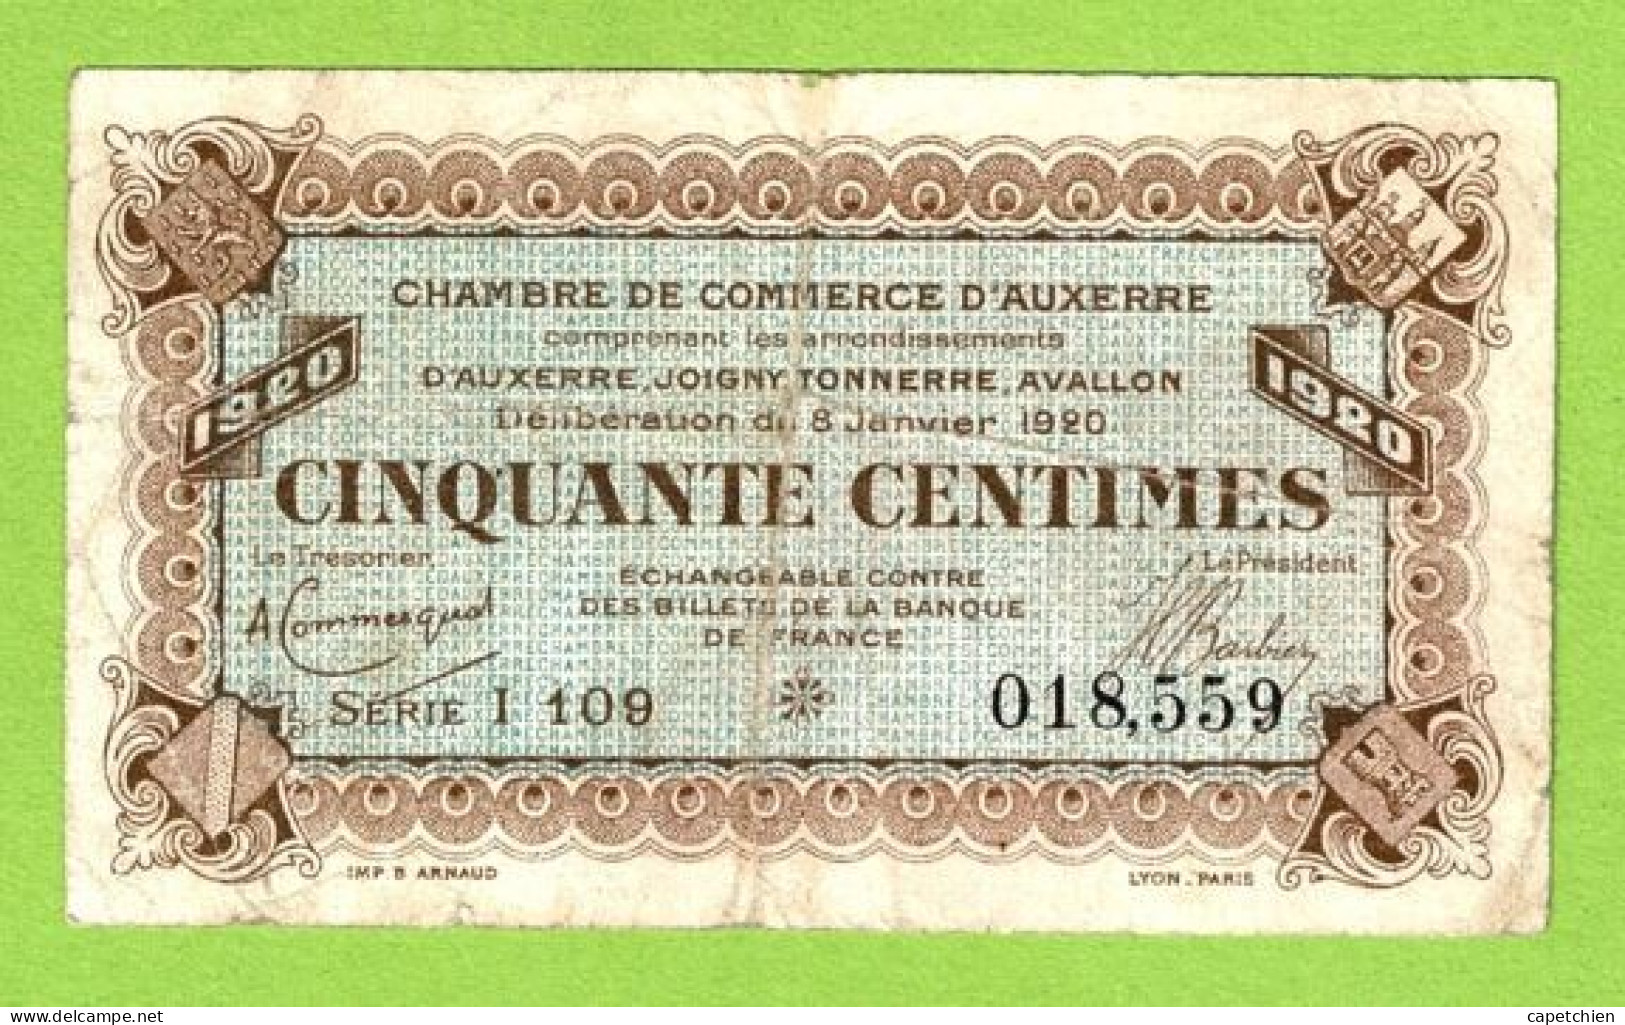 FRANCE / AUXERRE / 50 CENTIMES / 8 Janvier 1920 / N° 018559 / SERIE  I  109 - Cámara De Comercio